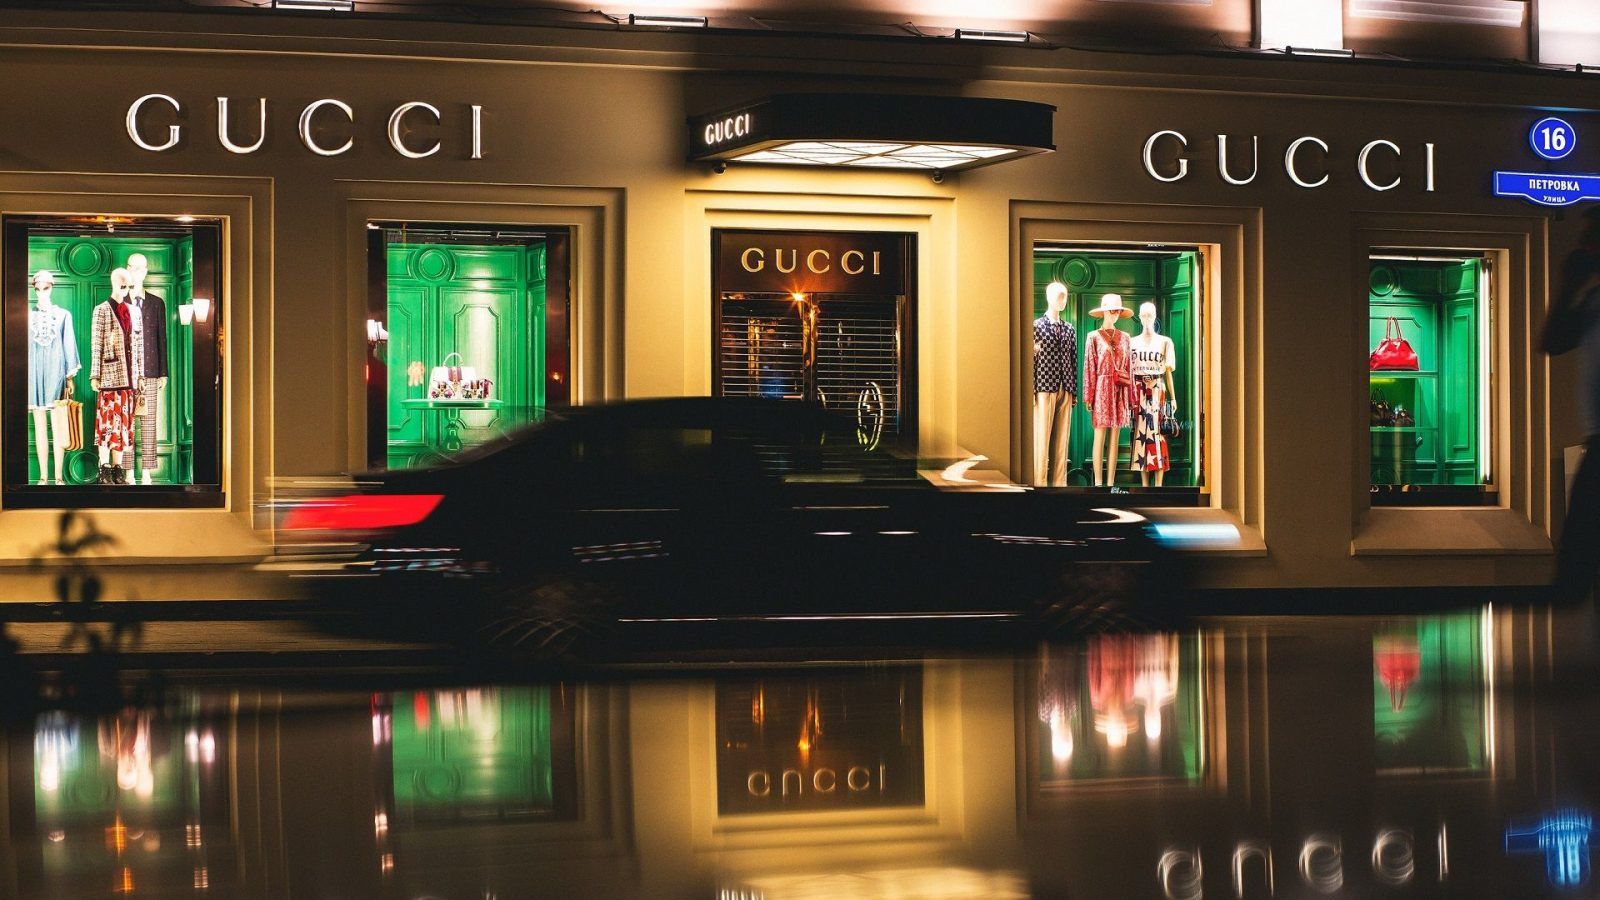 Gucci History: Hãy tìm hiểu về lịch sử của một thương hiệu thời trang nổi tiếng nhất thế giới. Từ những bước đầu tiên trong thế giới thời trang đến thành công mạnh mẽ của Gucci ngày nay - tất cả đều được bao phủ trong chuyên mục này. Với những đoạn phim, ảnh cổ và những câu chuyện lịch sử, bạn sẽ được sống lại chặng đường đáng nhớ của Gucci. 